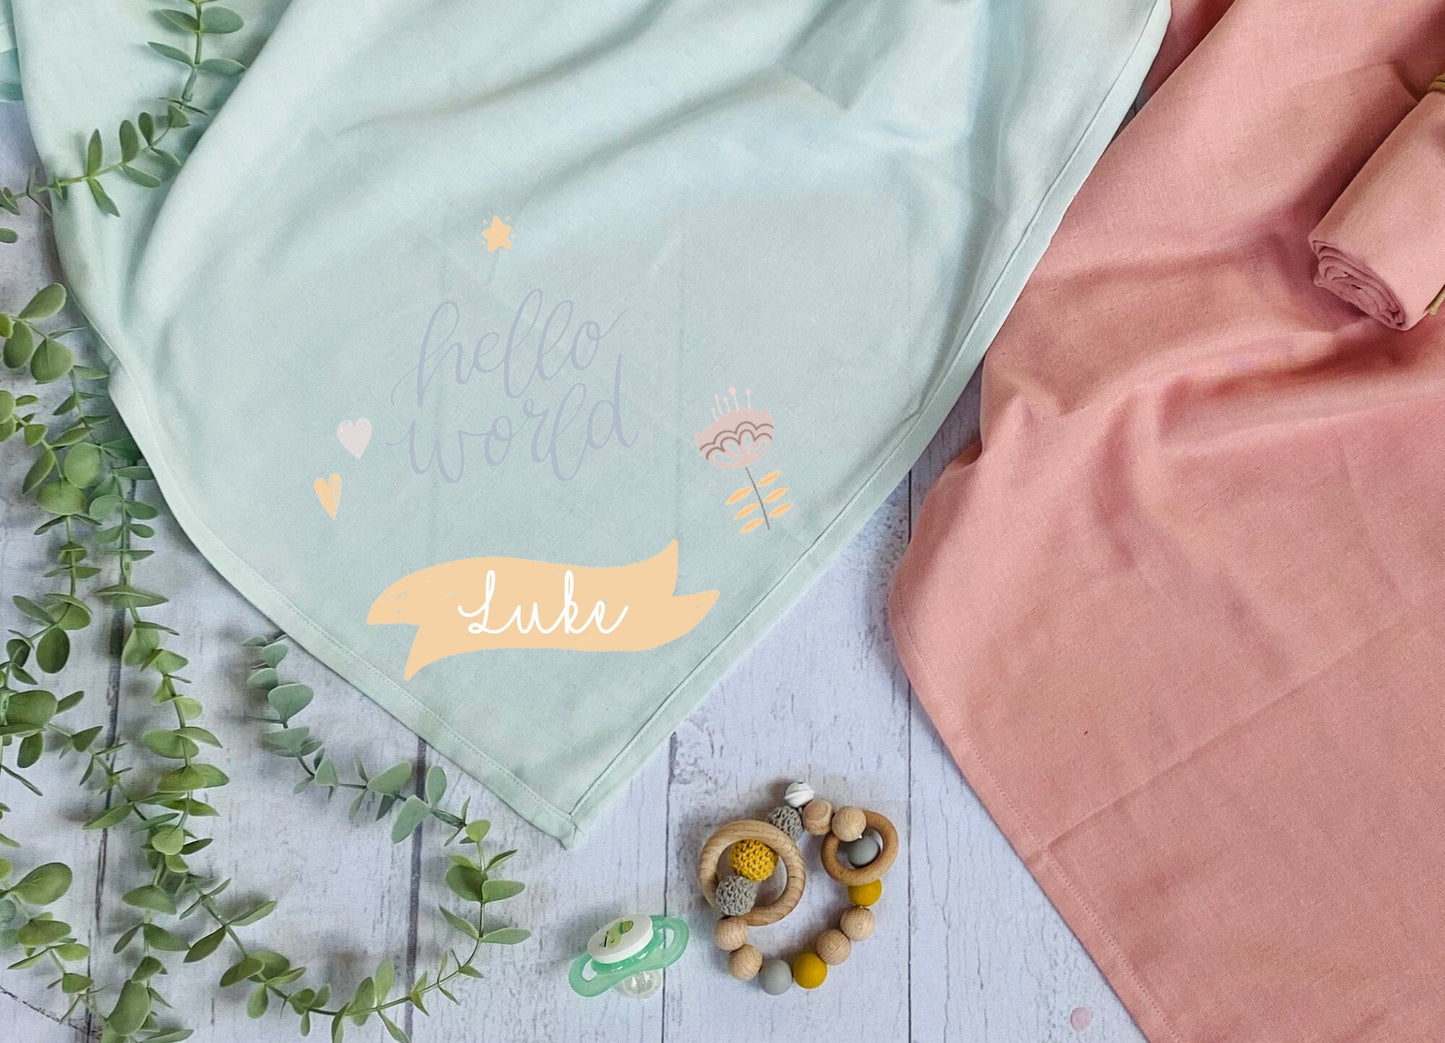 Mulltuch Spucktuch Baby - personalisiert mit Name - 3 Designs - Organic Cotton